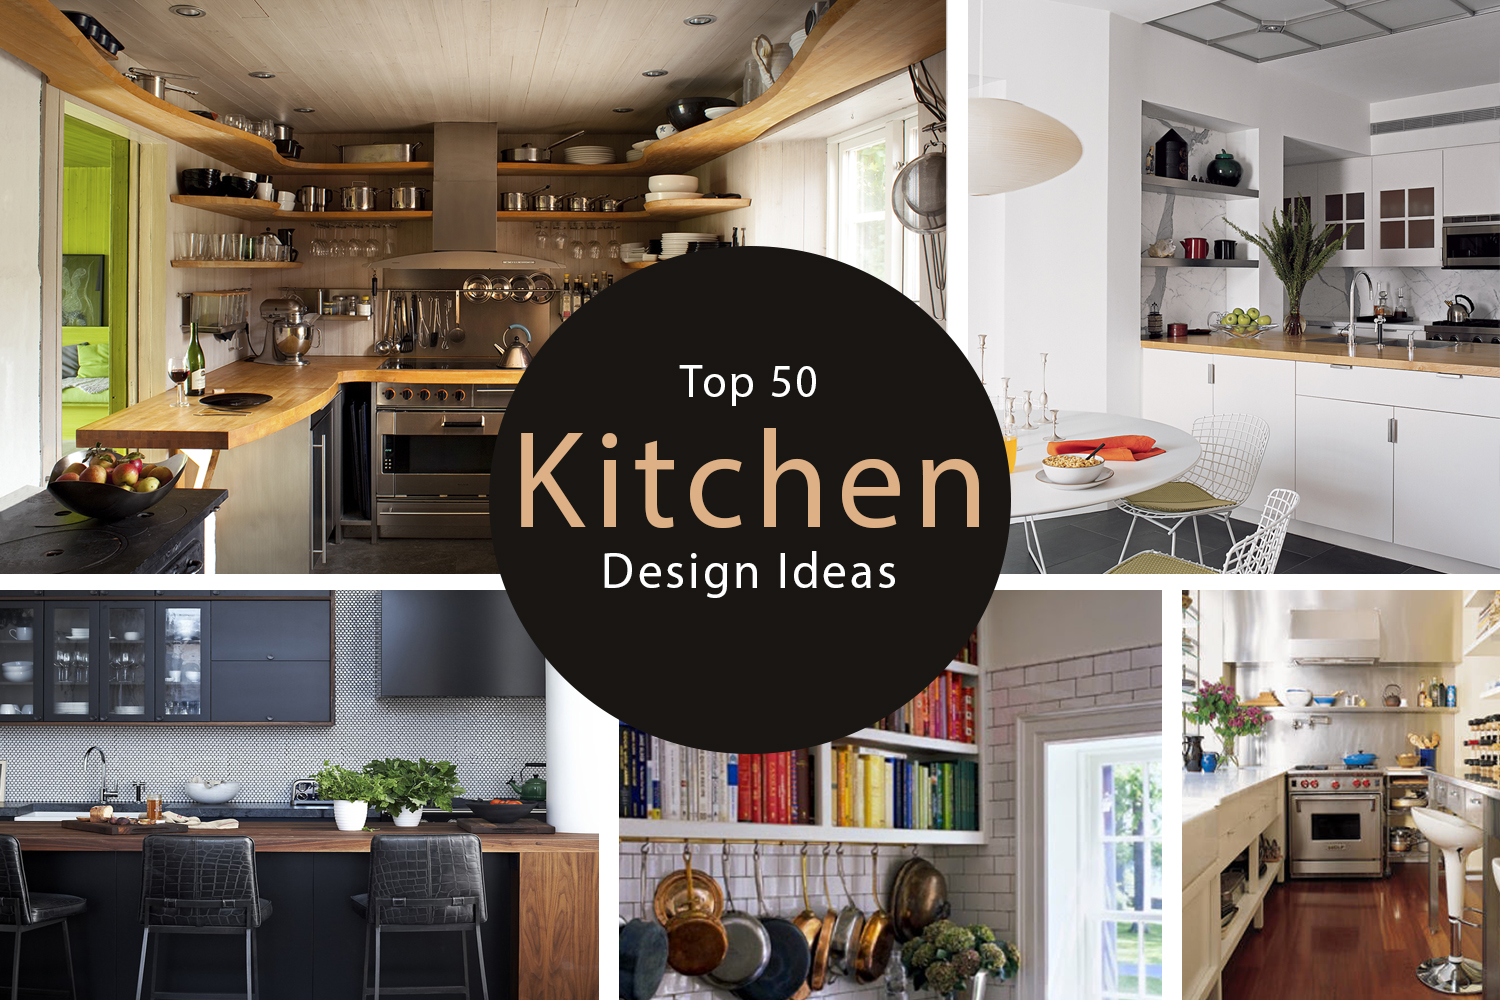 Top 50 Kitchen Design Ideas